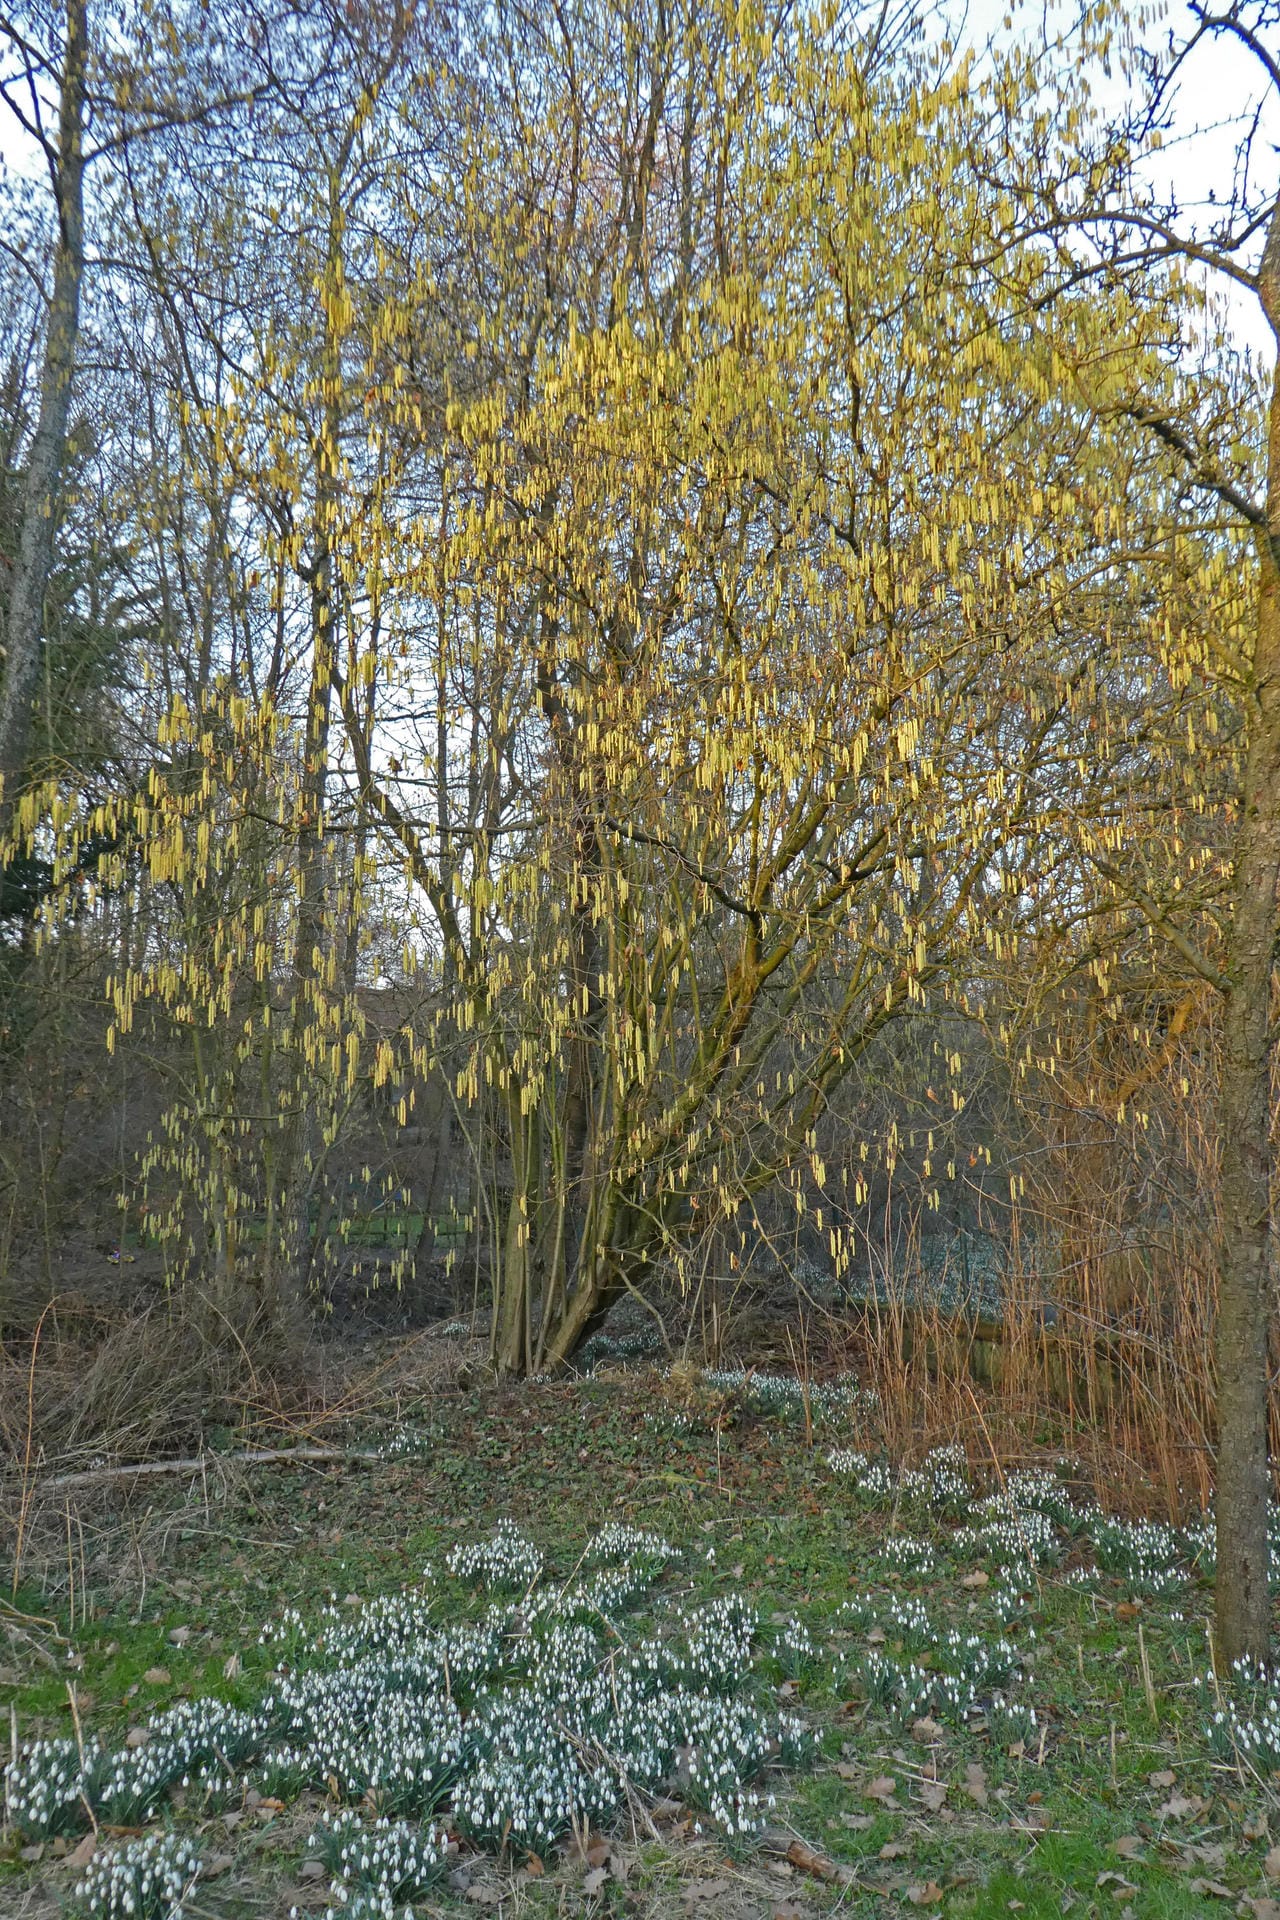 Anne-Christel Zolondek hat das erste frische Grün der Bäume im spätnachmittäglichen Sonnenlicht aufgenommen. Das Bild stammt aus Haan-Gruiten an der Düssel, Nordrhein-Westfalen.